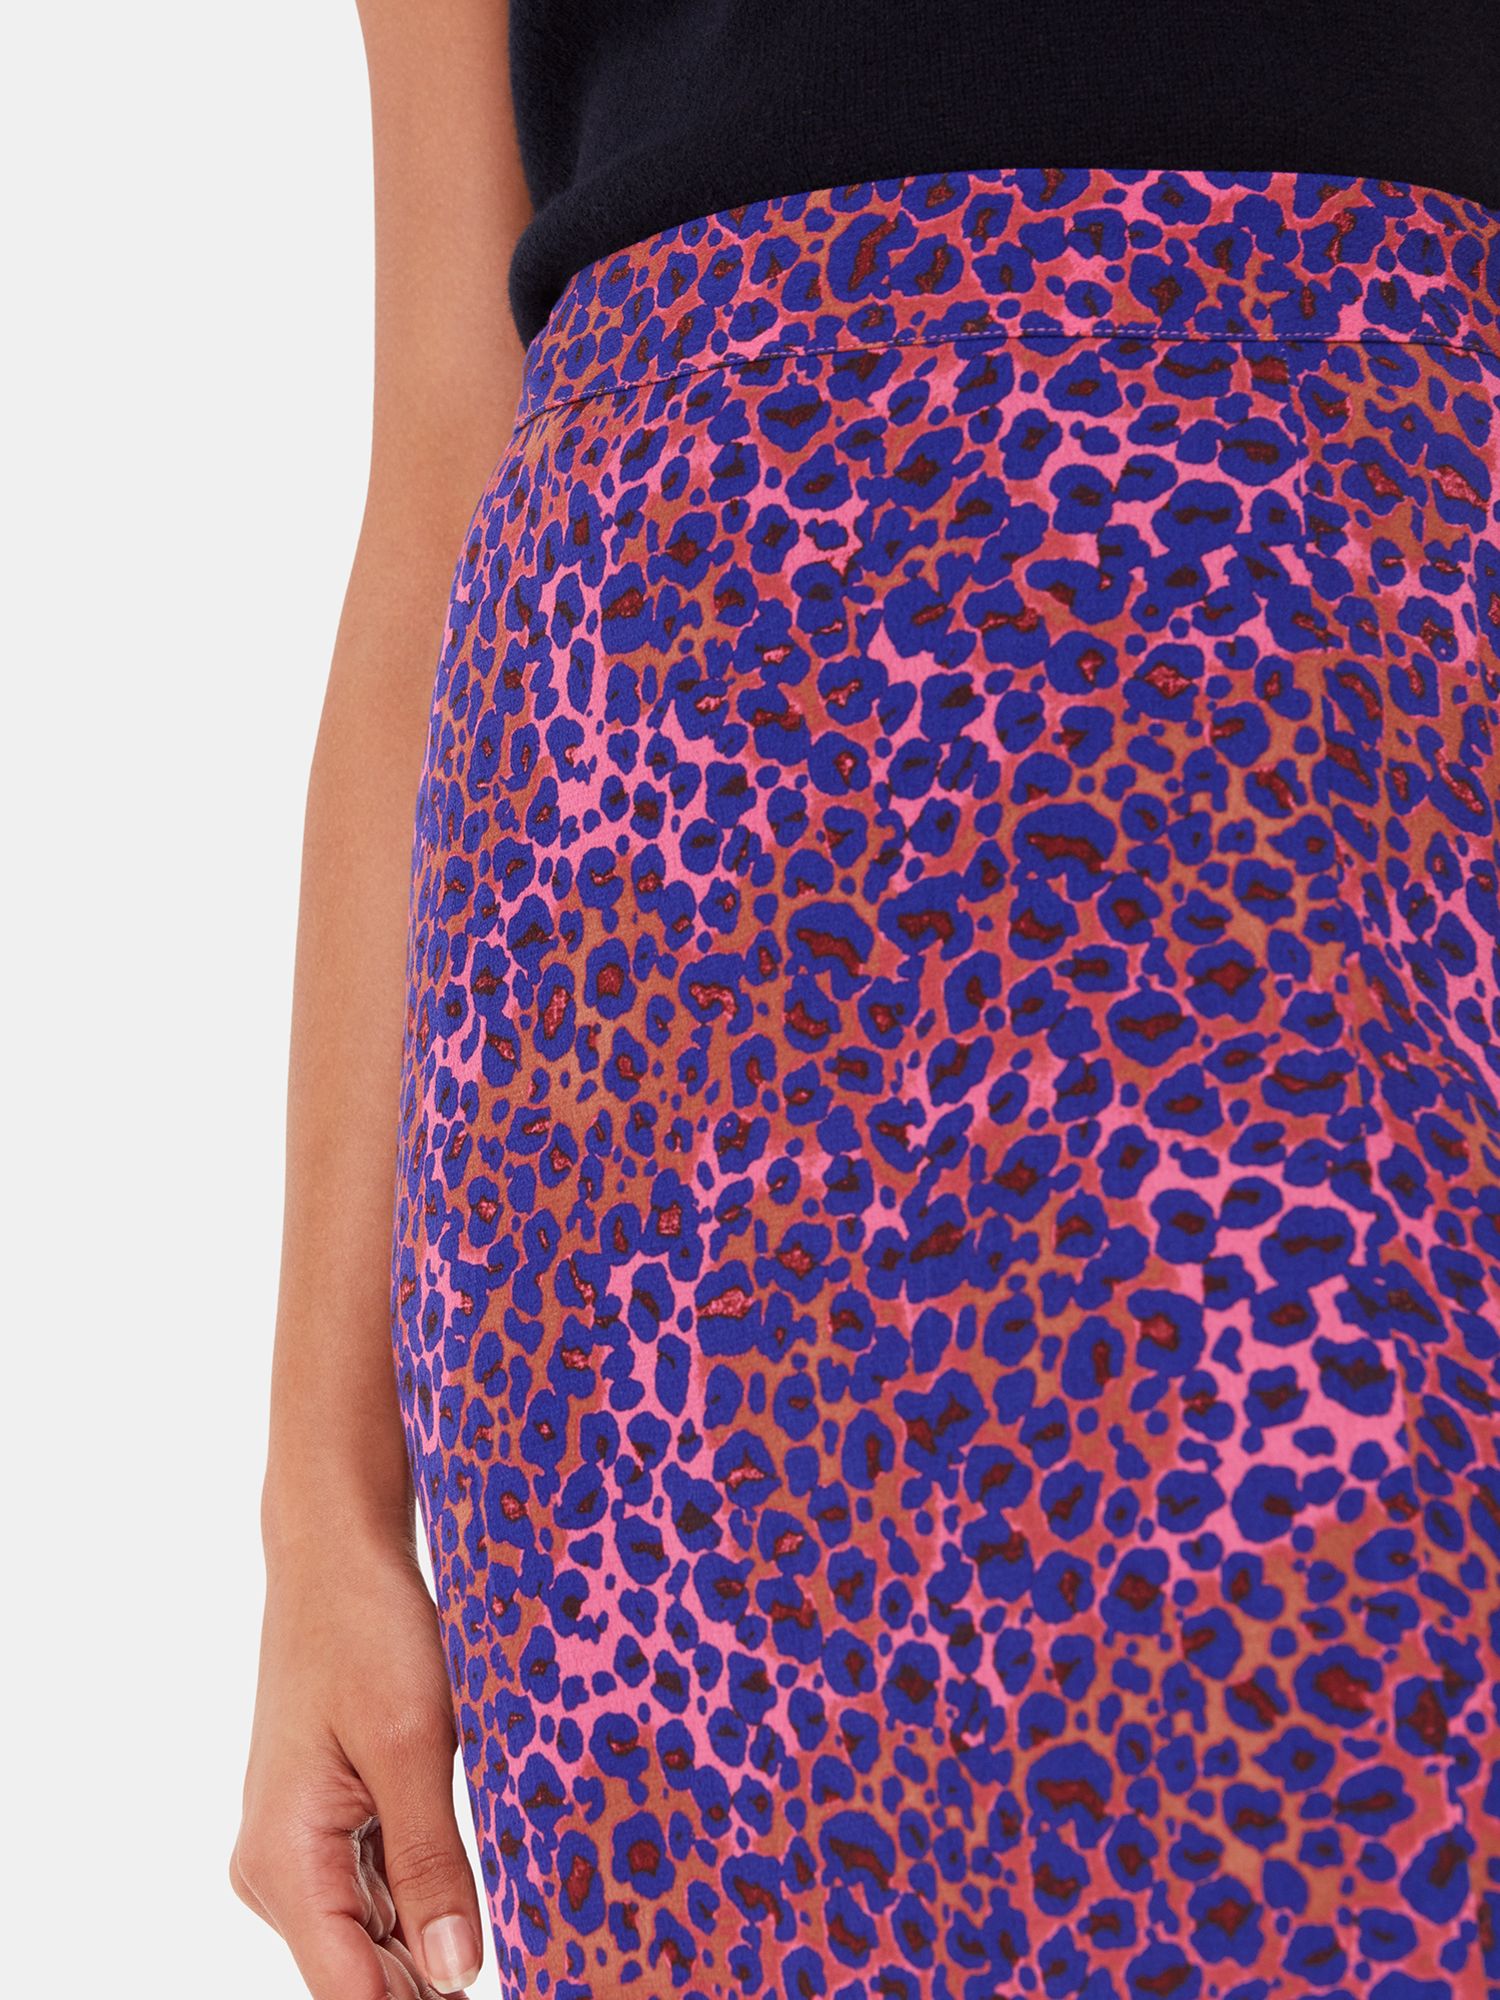 Whistles Mottled Leopard Print Midi Skirt, Pink/Multi, 6